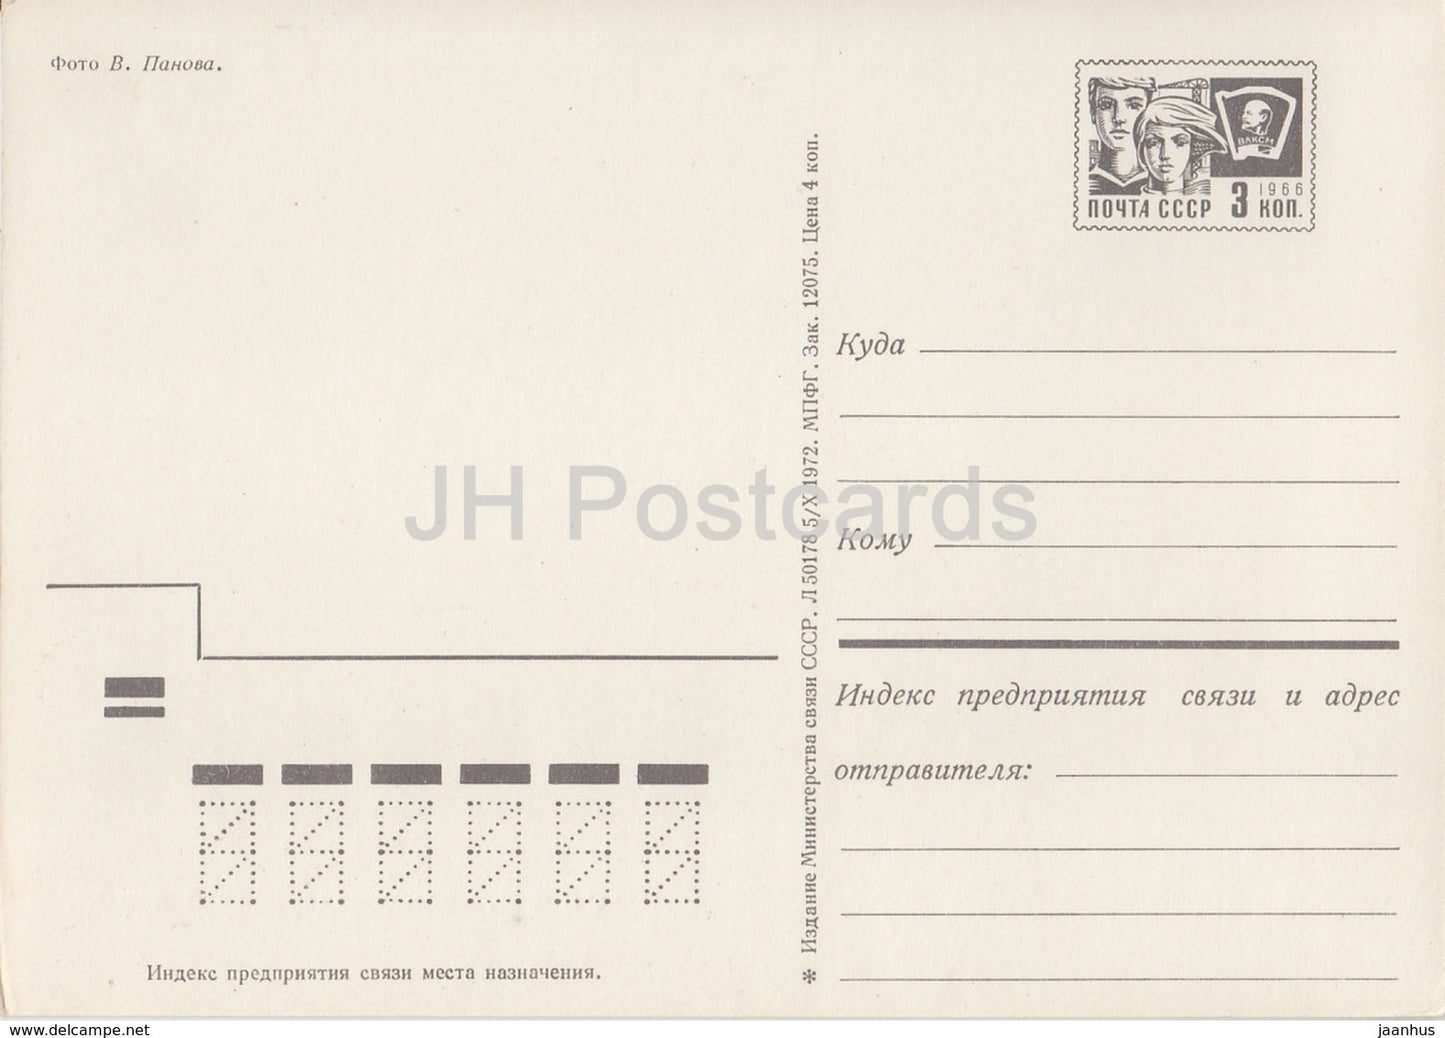 Sotchi - Gare - entier postal - 1972 - Russie URSS - inutilisé